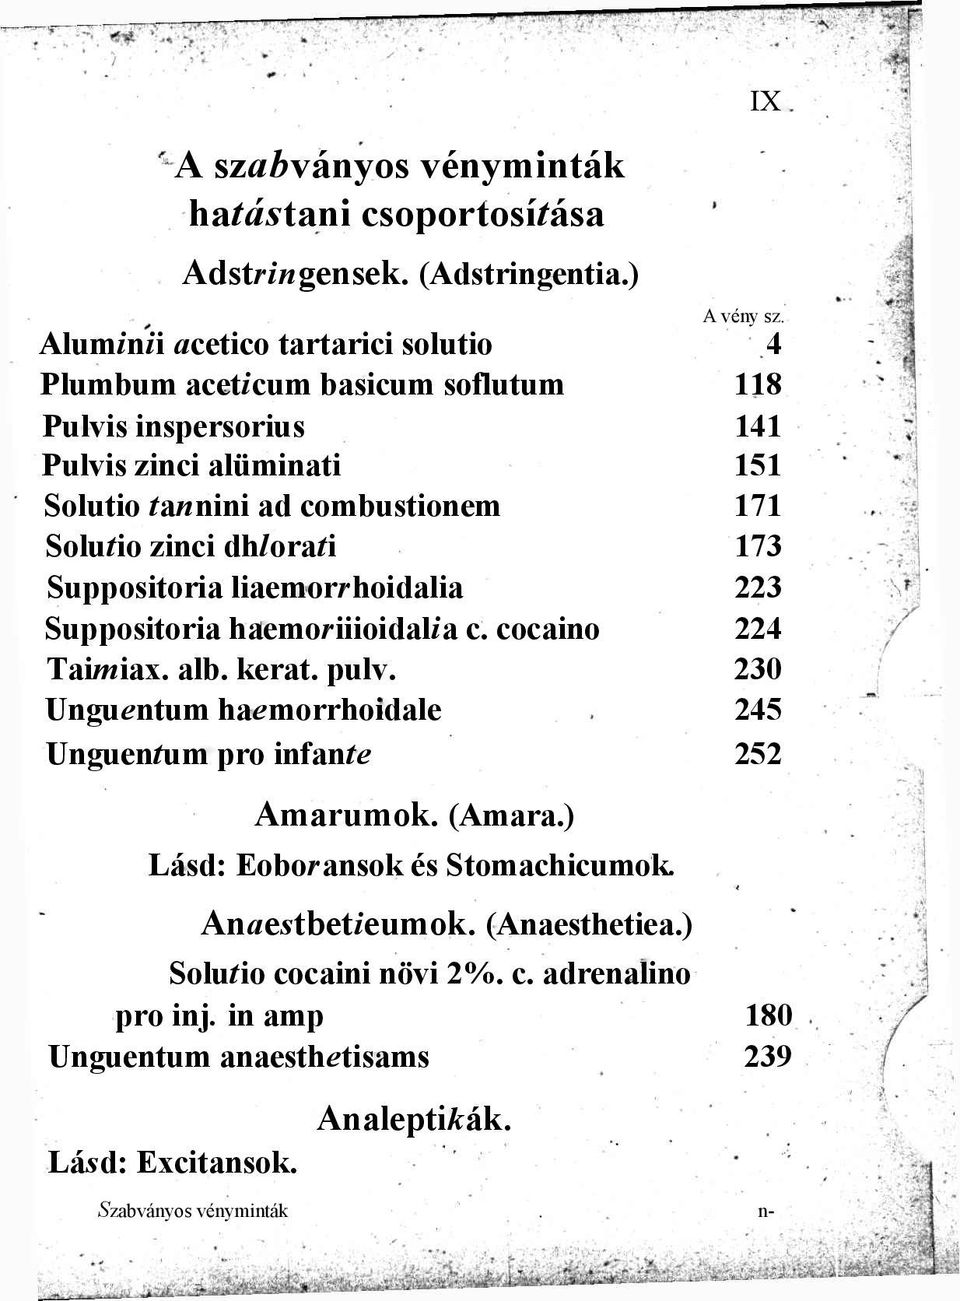 zinci dhlorati 173 Suppositoria liaemorrhoidalia 223 Suppositoria haemoriiioidalia c. cocaino 224 Taimiax. alb. kerat. pulv.